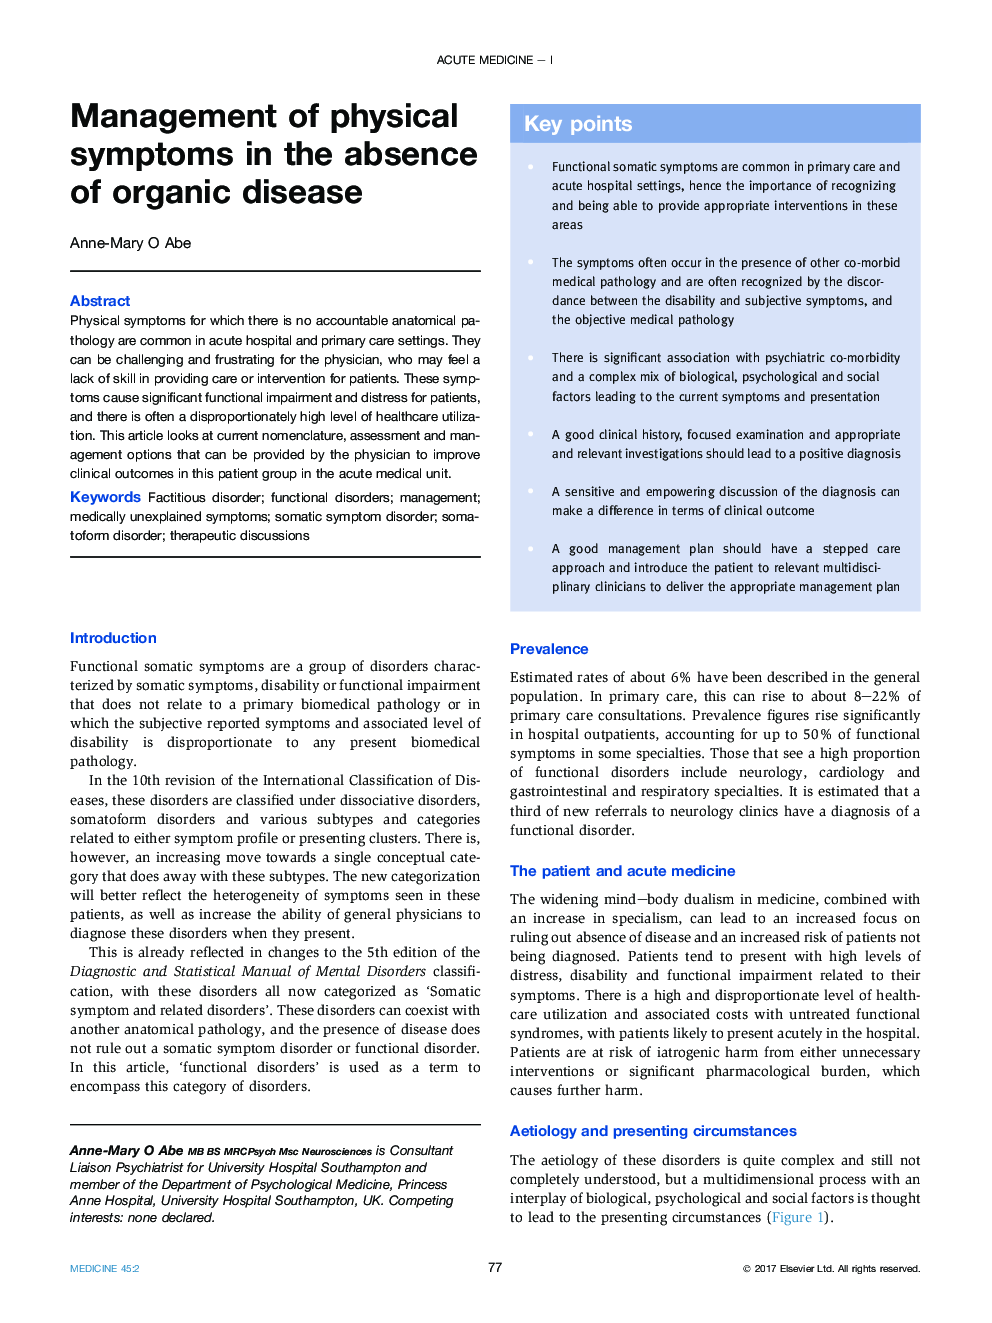 مدیریت علائم جسمی در غیاب بیماری های ارگانیک 